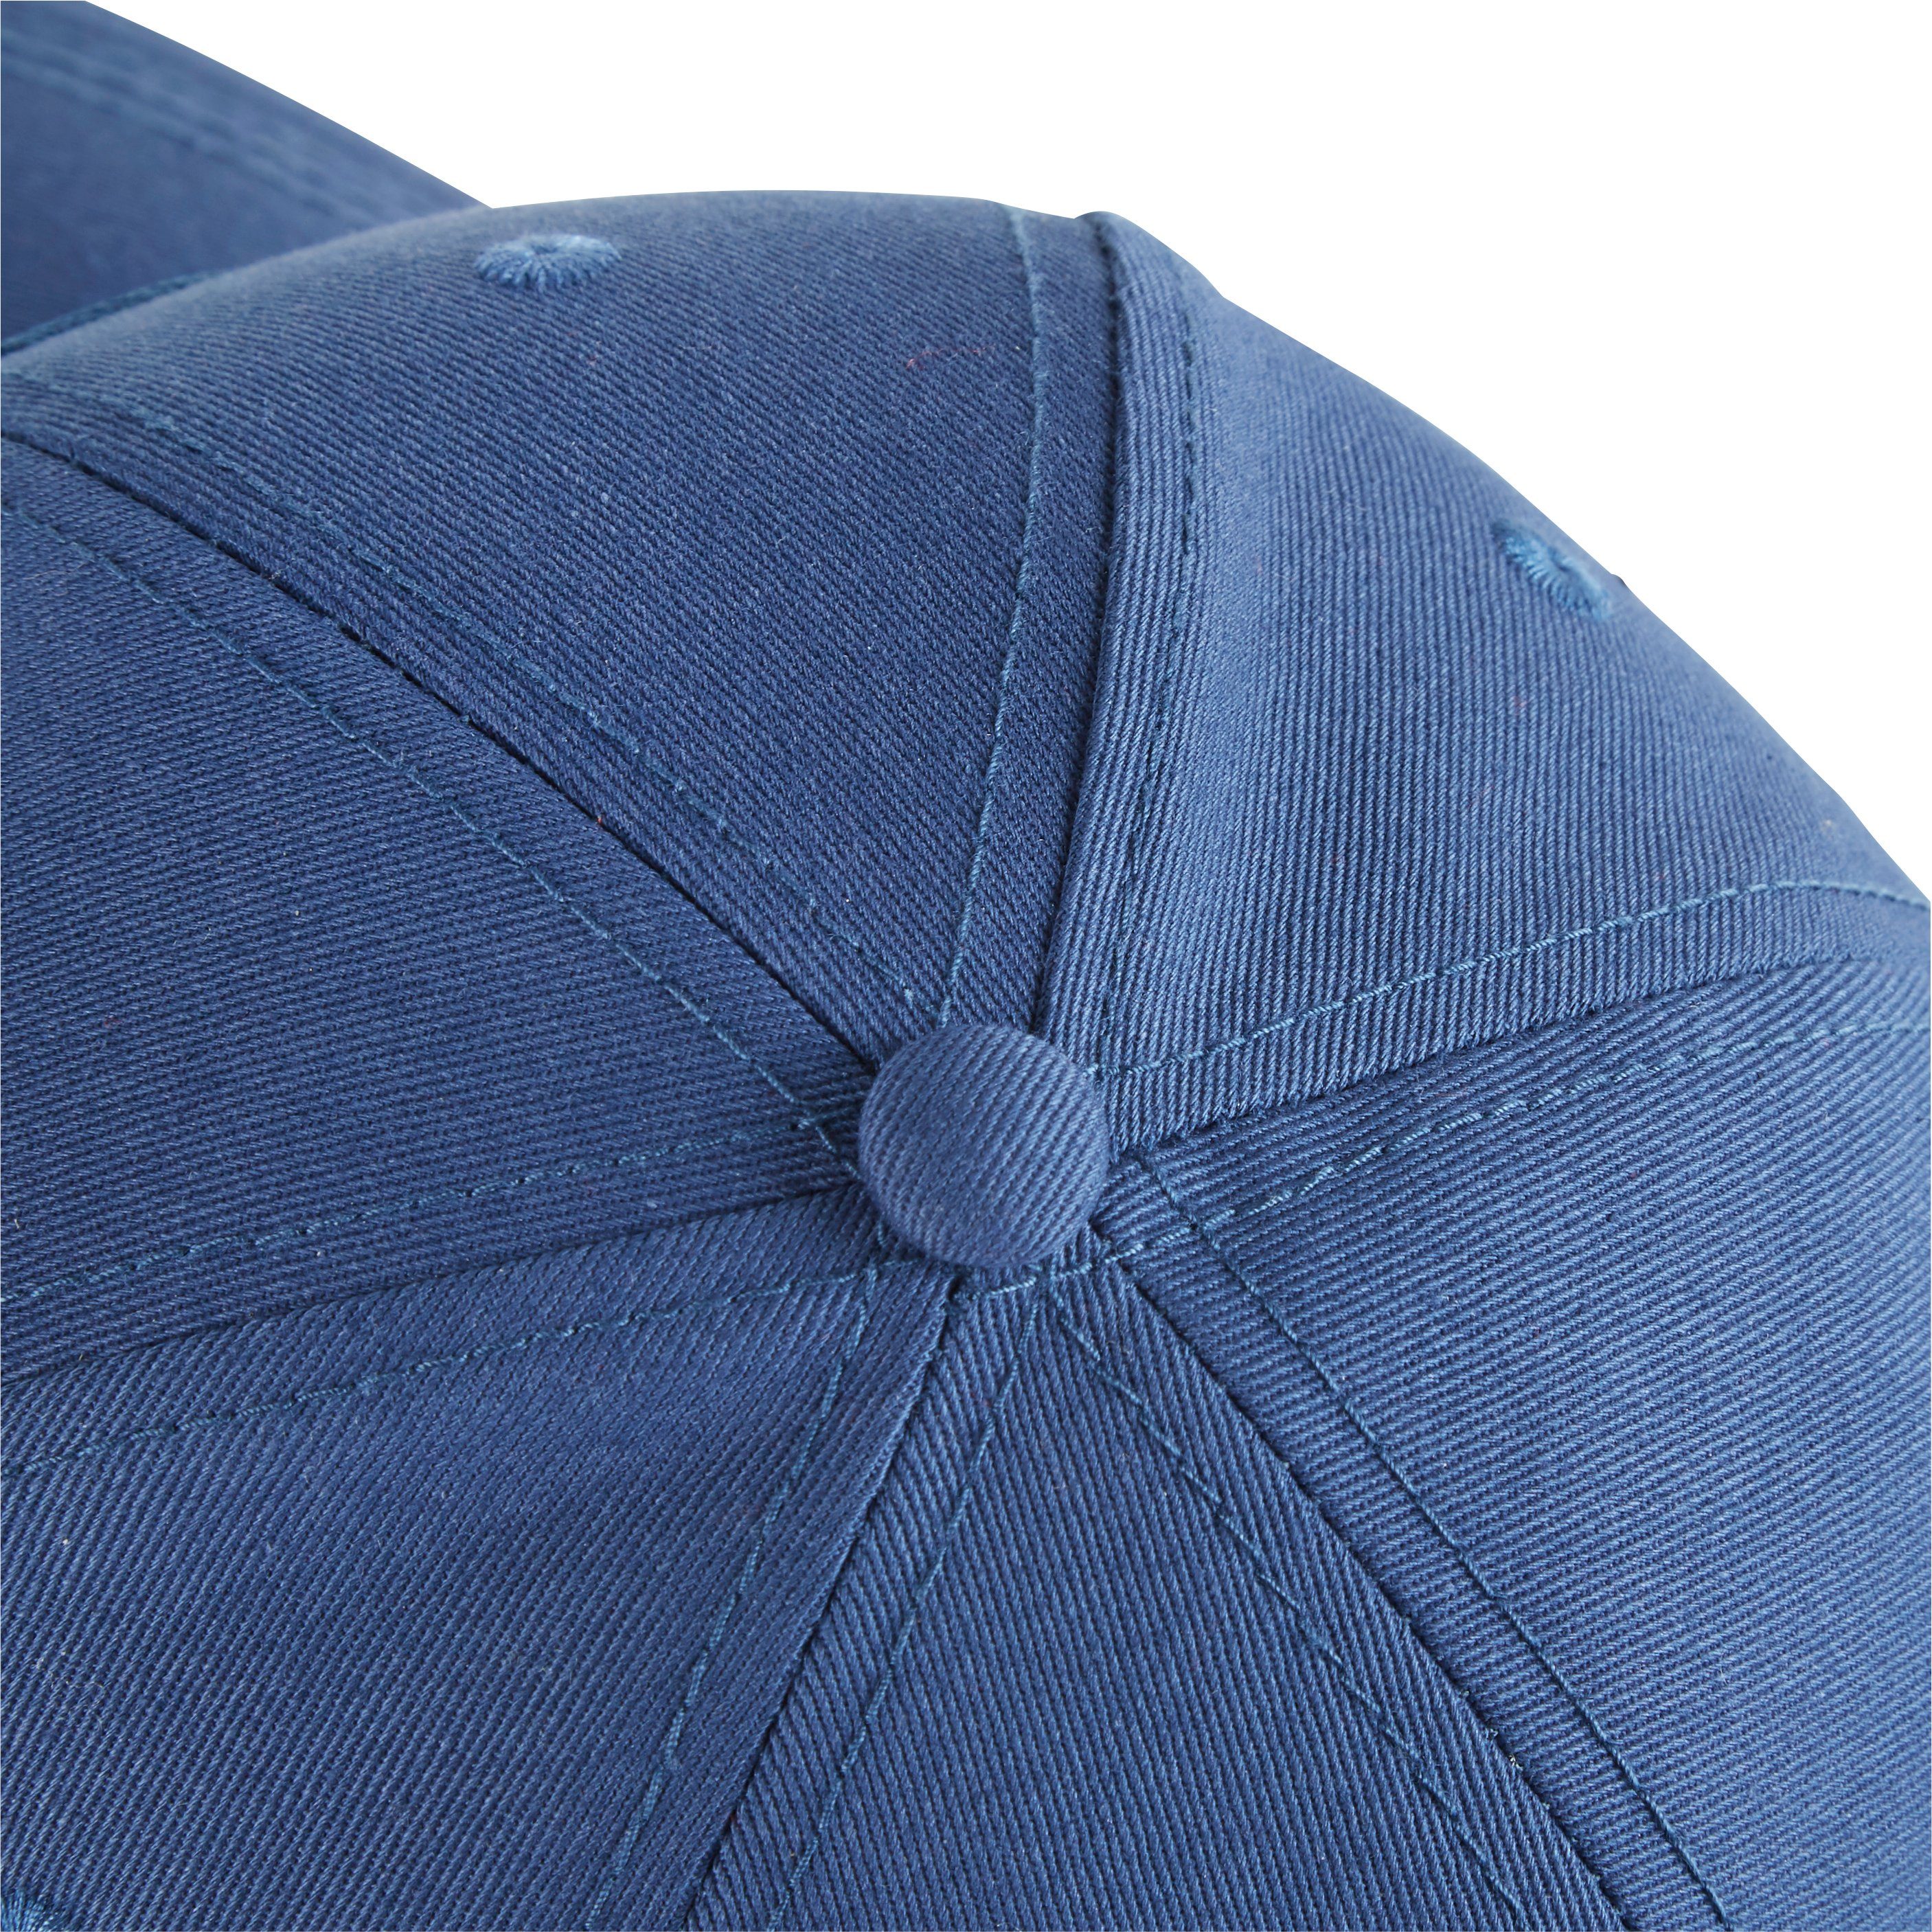 Northern Country Snapback Cap größenverstellbar, beim Arbeiten Blue Sonne vor Teal Wing schützt